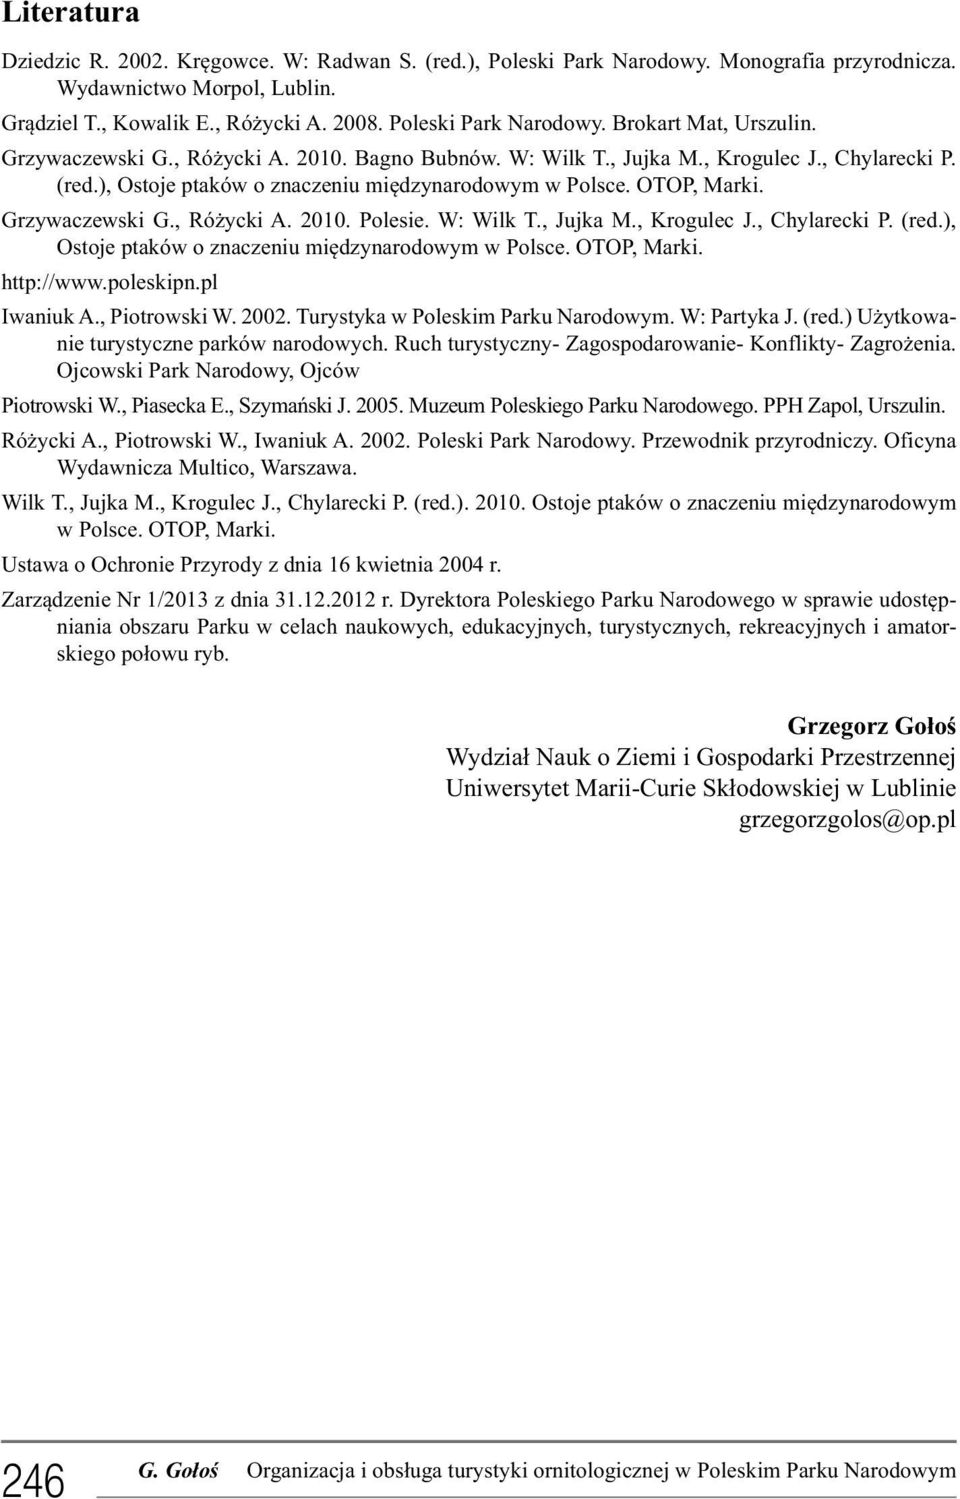 W: Wilk T., Jujka M., Krogulec J., Chylarecki P. (red.), Ostoje ptaków o znaczeniu międzynarodowym w Polsce. OTOP, Marki. http://www.poleskipn.pl Iwaniuk A., Piotrowski W. 2002.